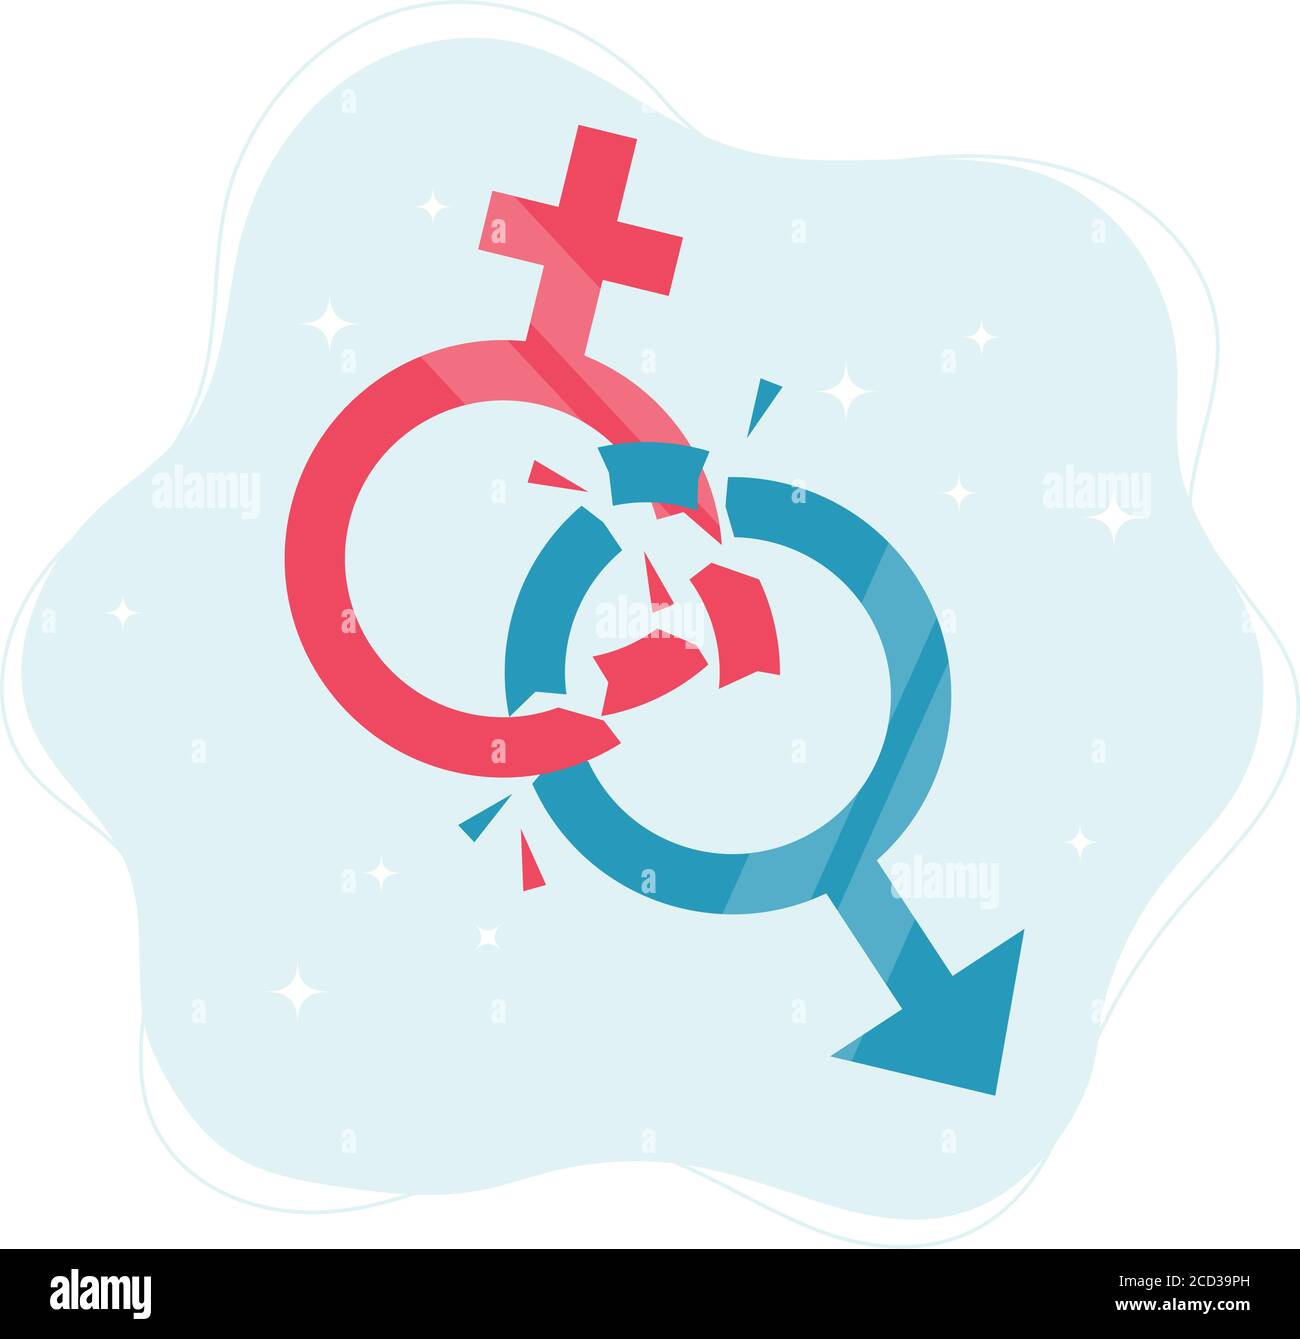 Concetto di norme di genere. Simboli di genere che si rompono in pezzi. Illustrazione vettoriale in stile piatto Illustrazione Vettoriale